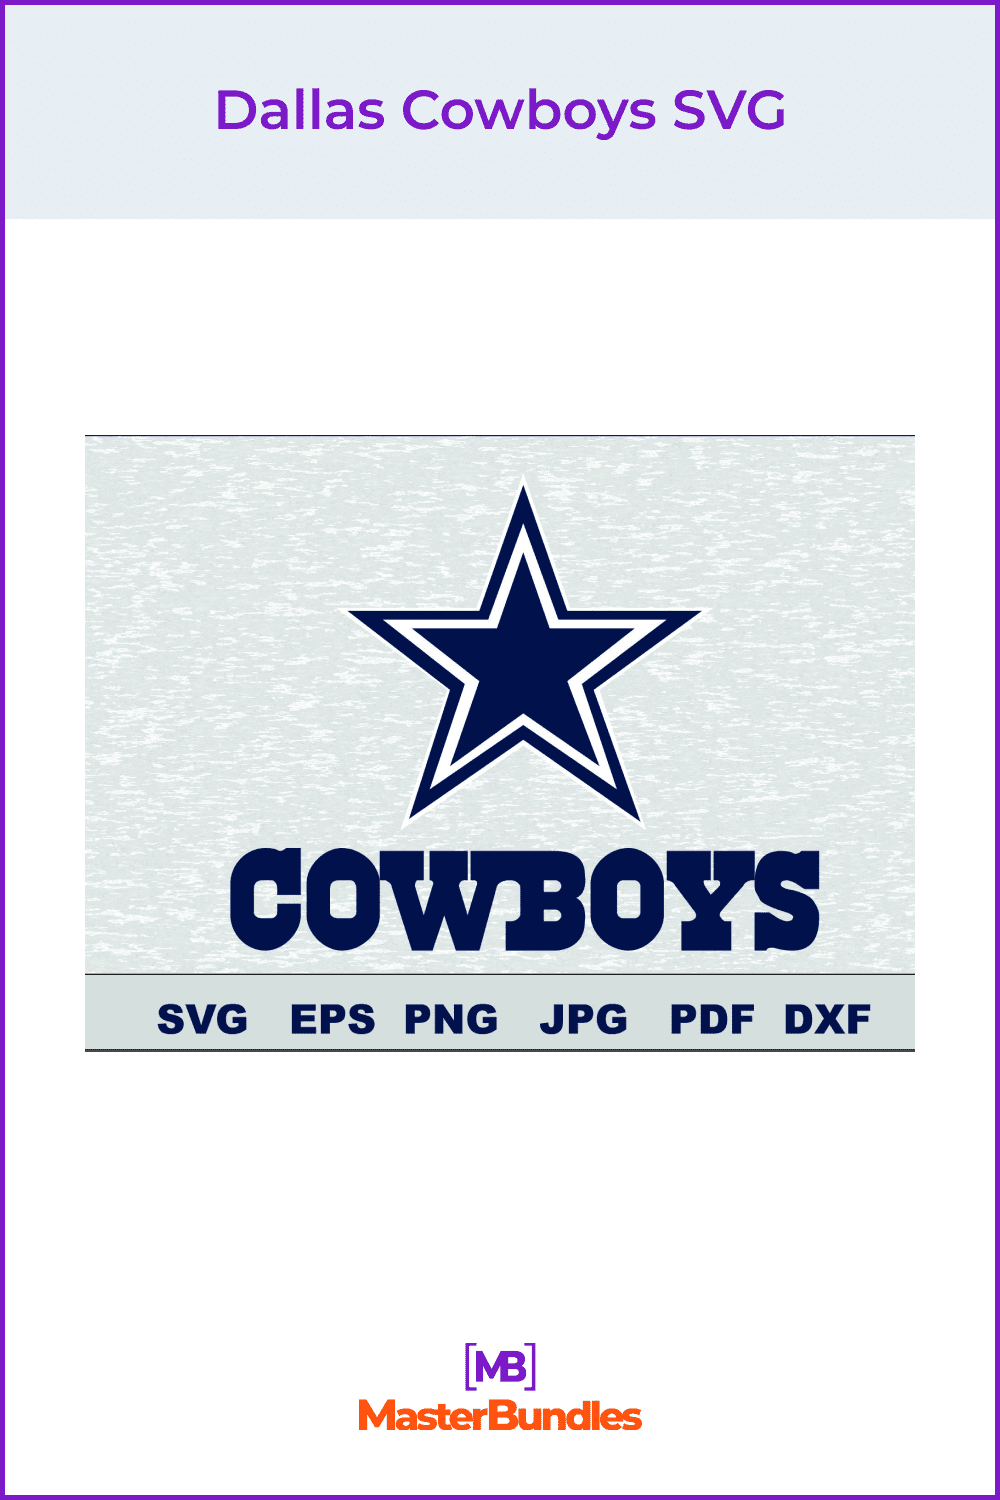 Dallas Cowboys SVG.